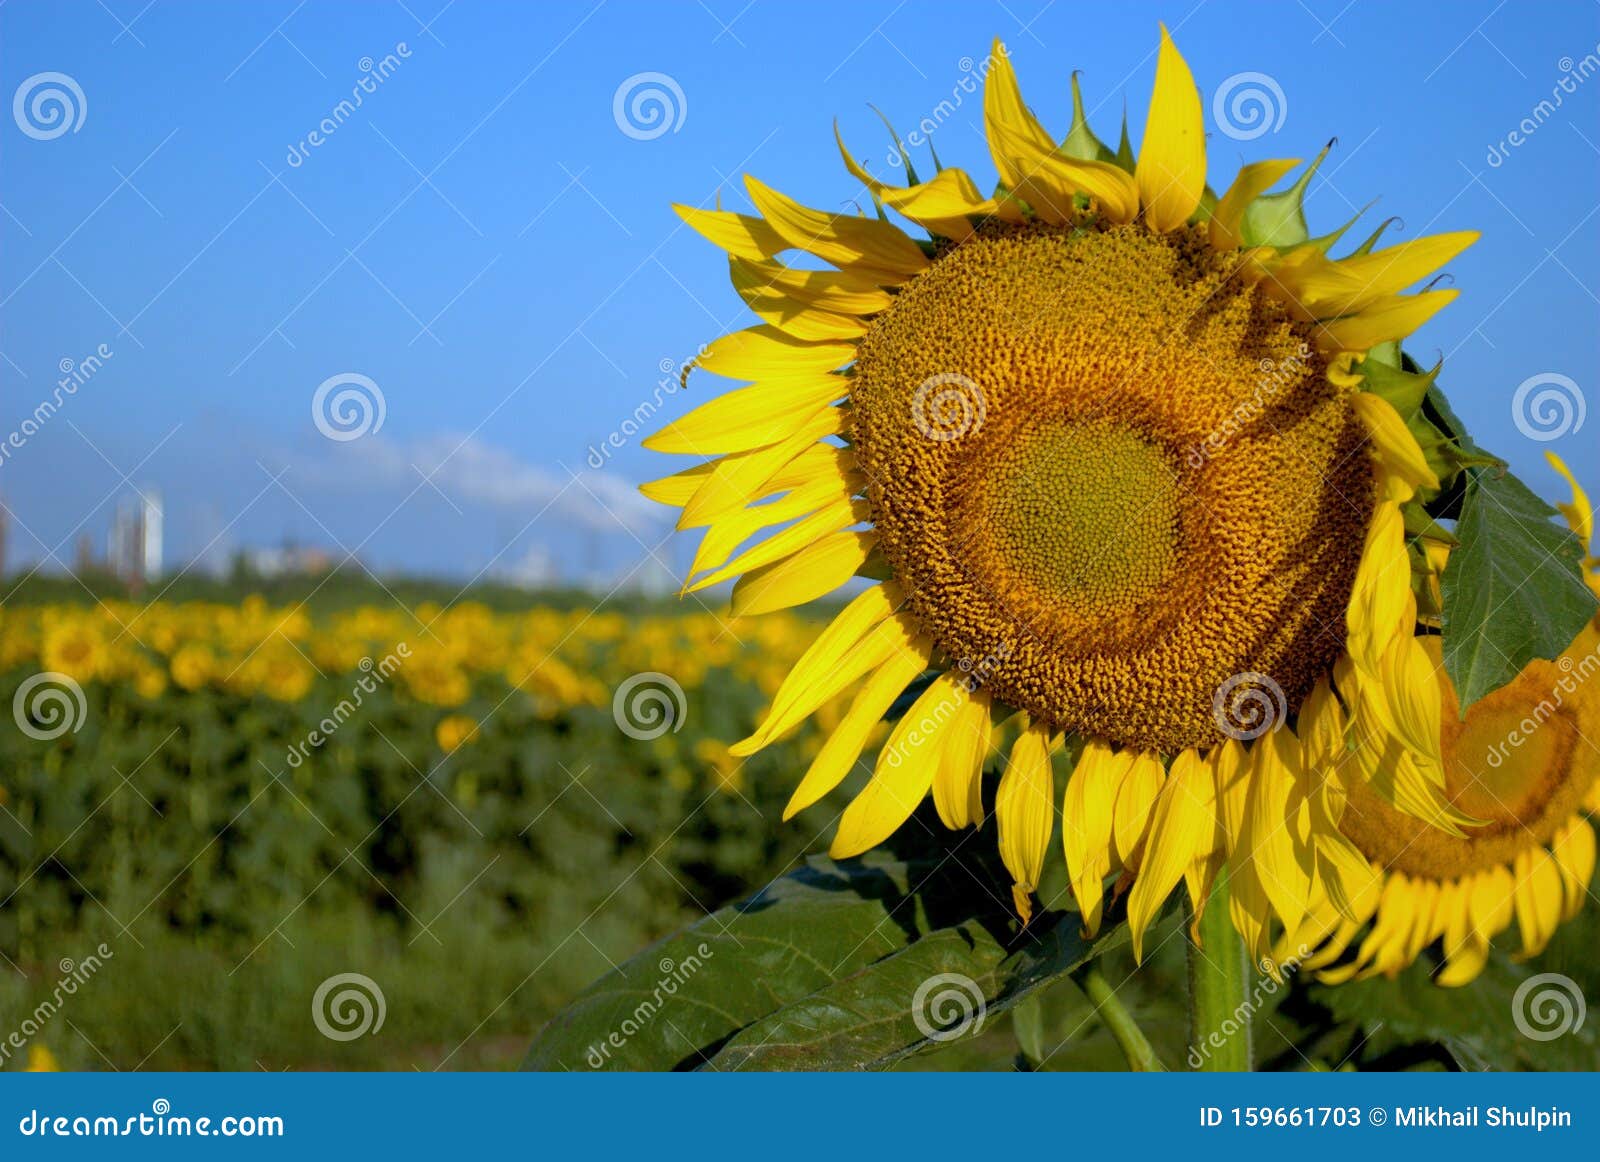 Smoking Sunflower Stock Image 516835